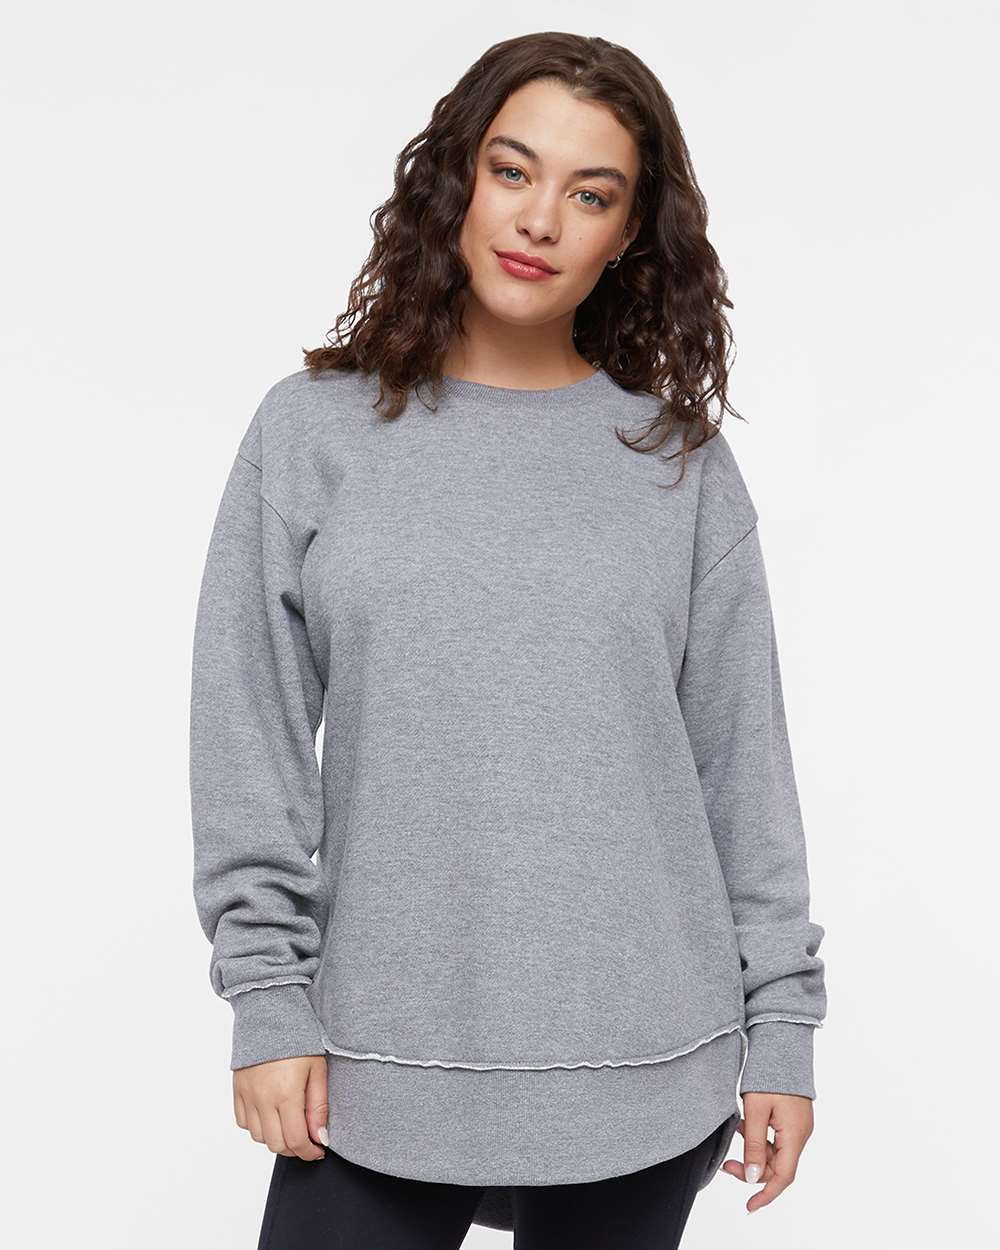 Ladies - Weekend Fleece Crewneck Sweatshirt (Blank Apparel)